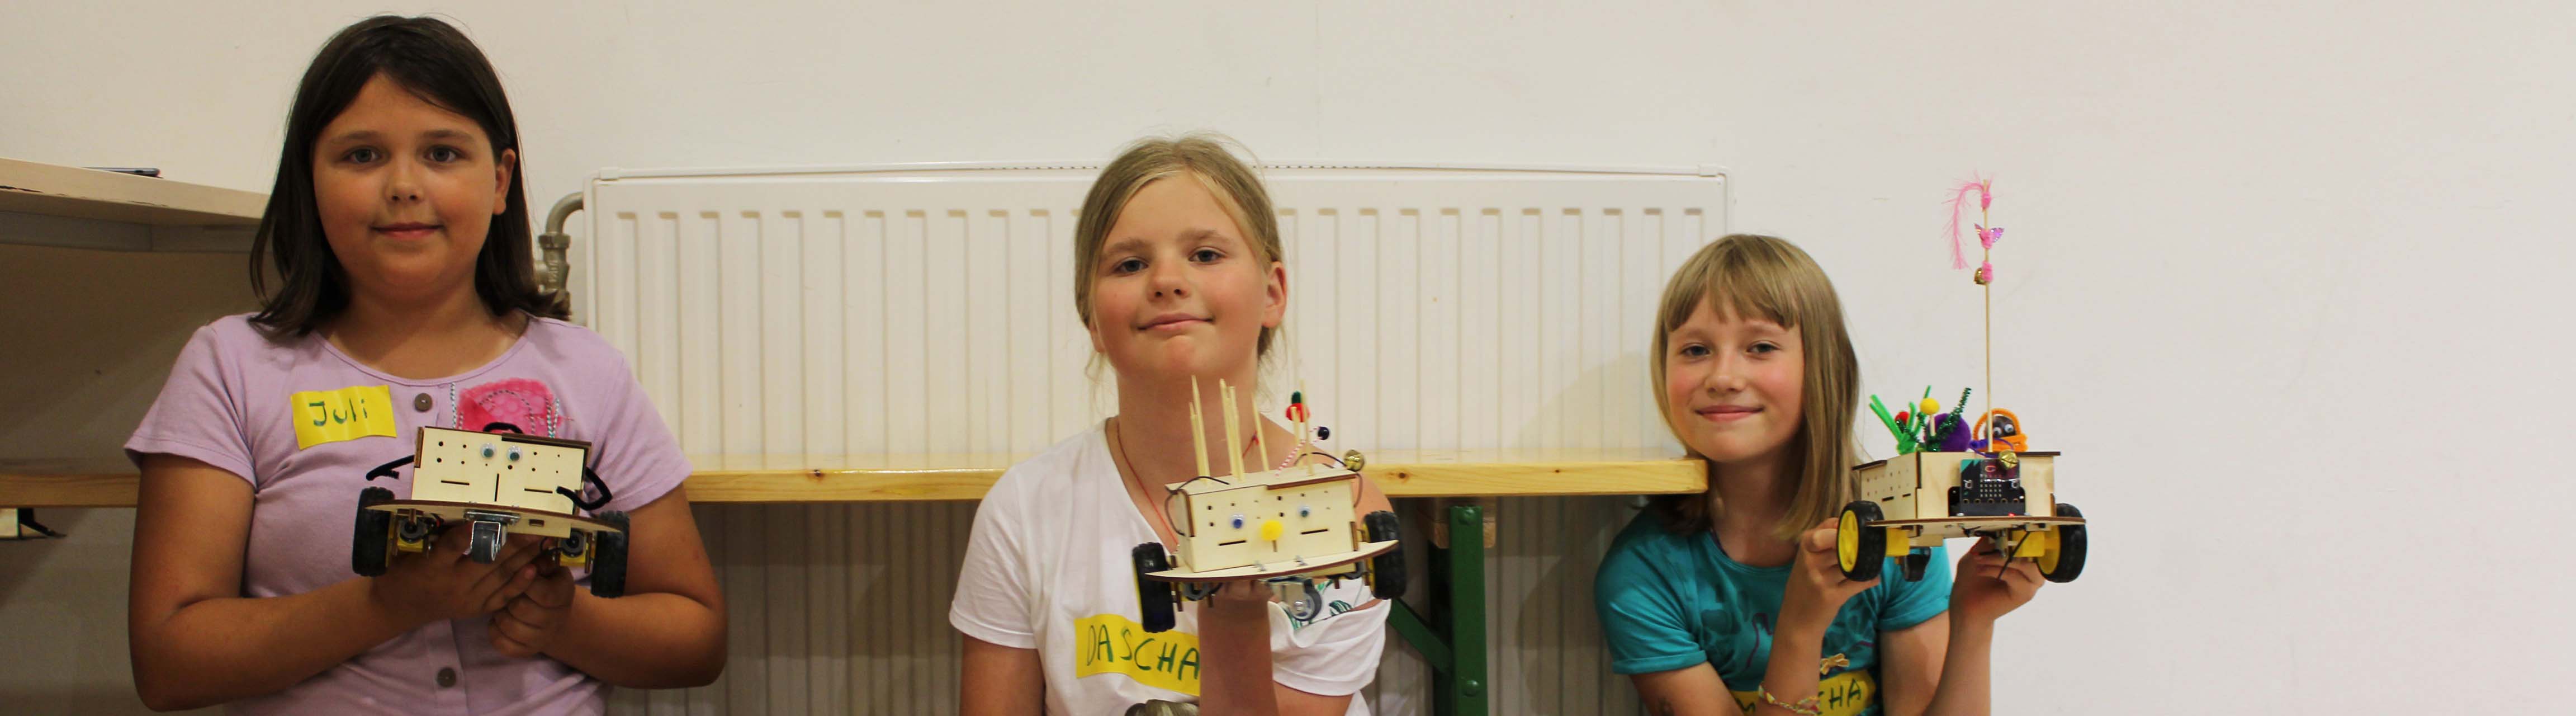 Drei Mädchen mit ihren selbst gebauten Robotern